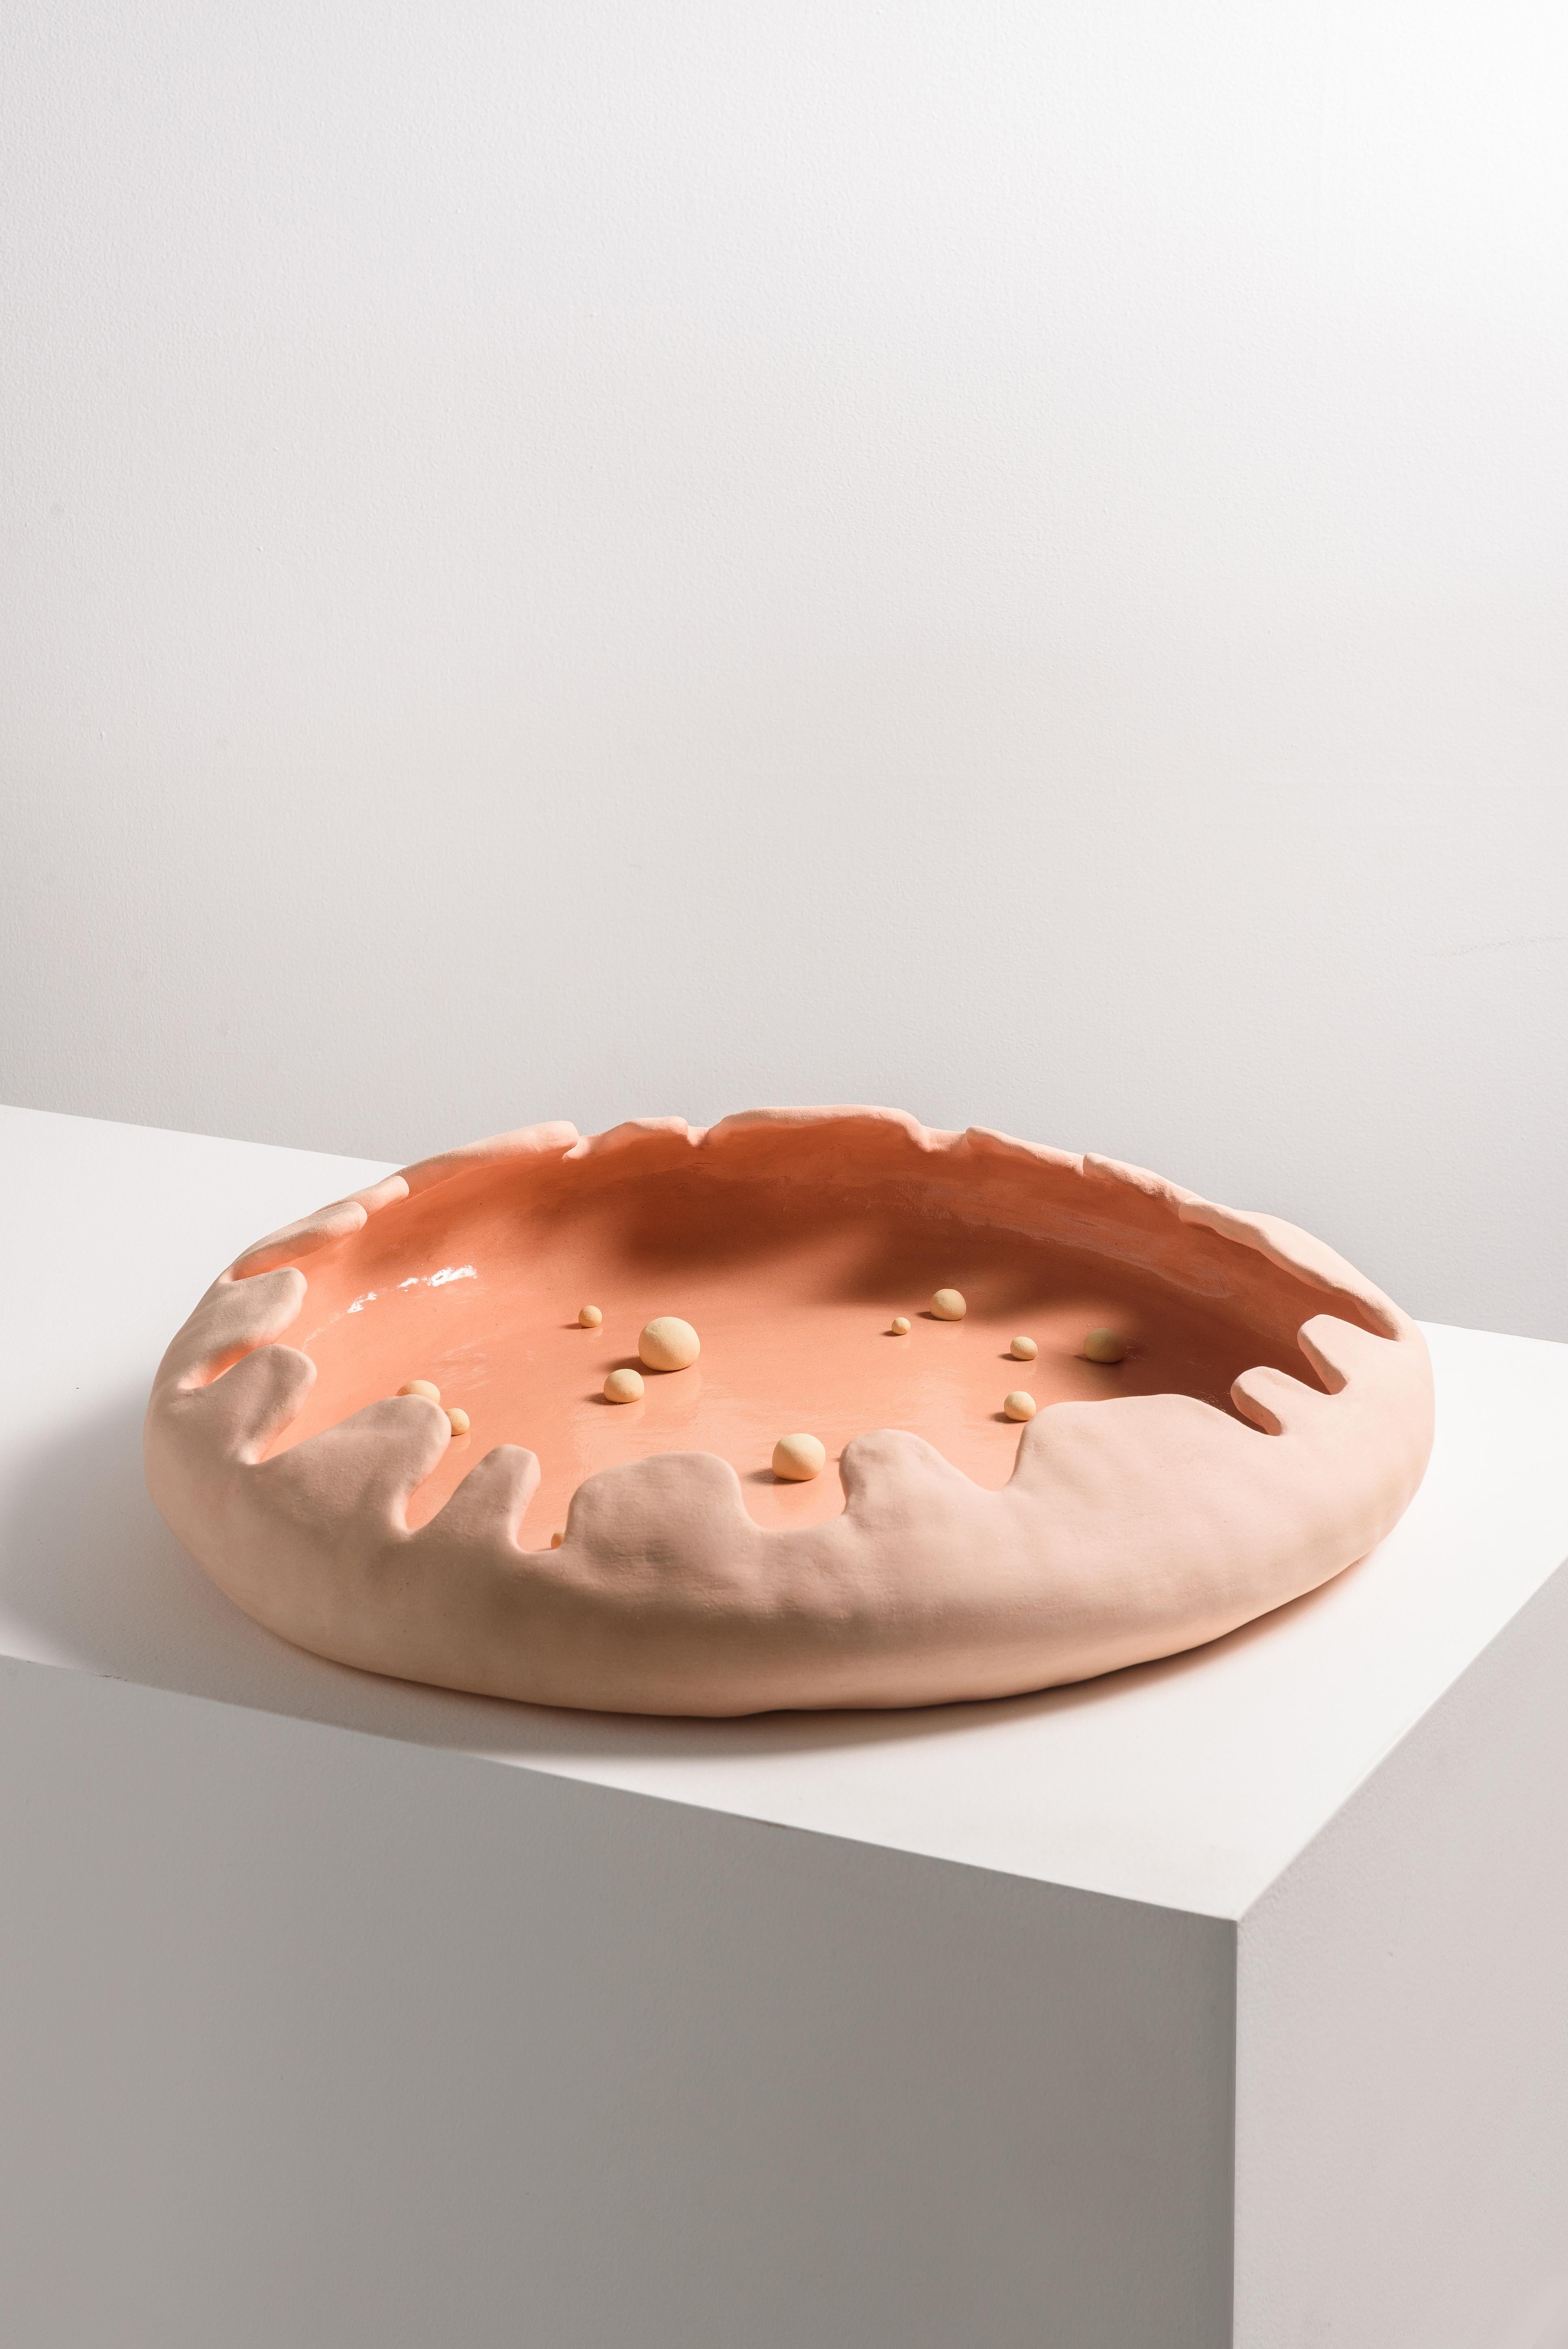 Brazilian Contemporary Handmade Ceramic, Orgus Bowl